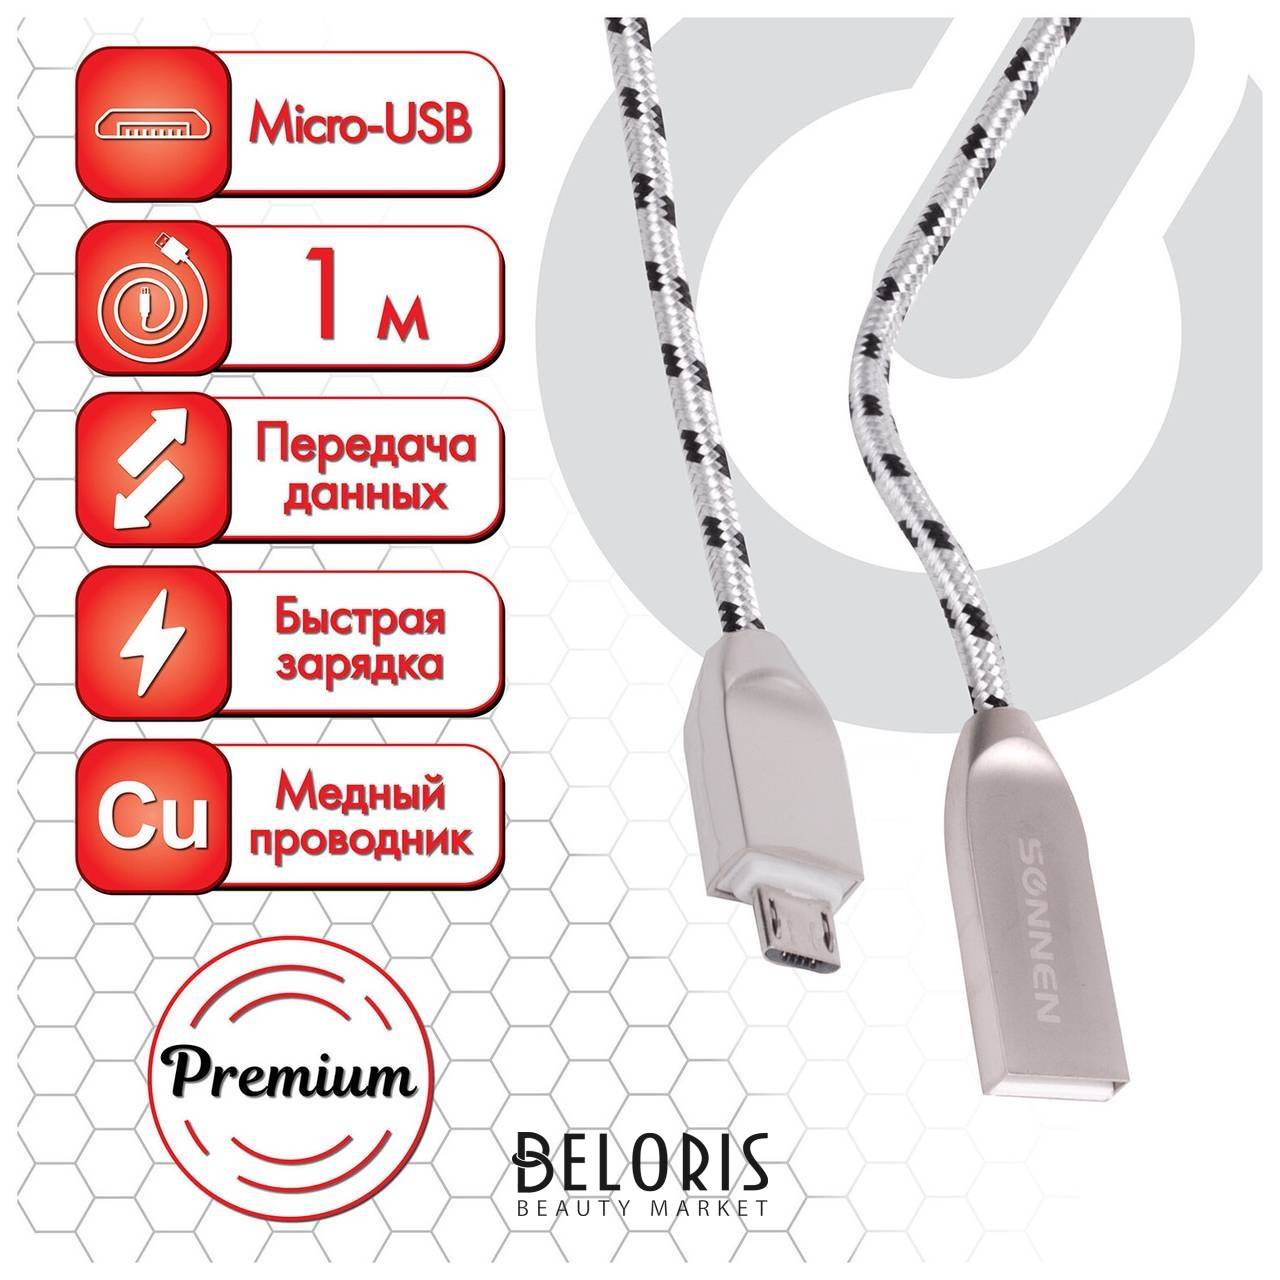 Кабель USB 2.0-micro Usb, 1 м, Sonnen Premium, медь, передача данных и быстрая зарядка, 513125 Sonnen